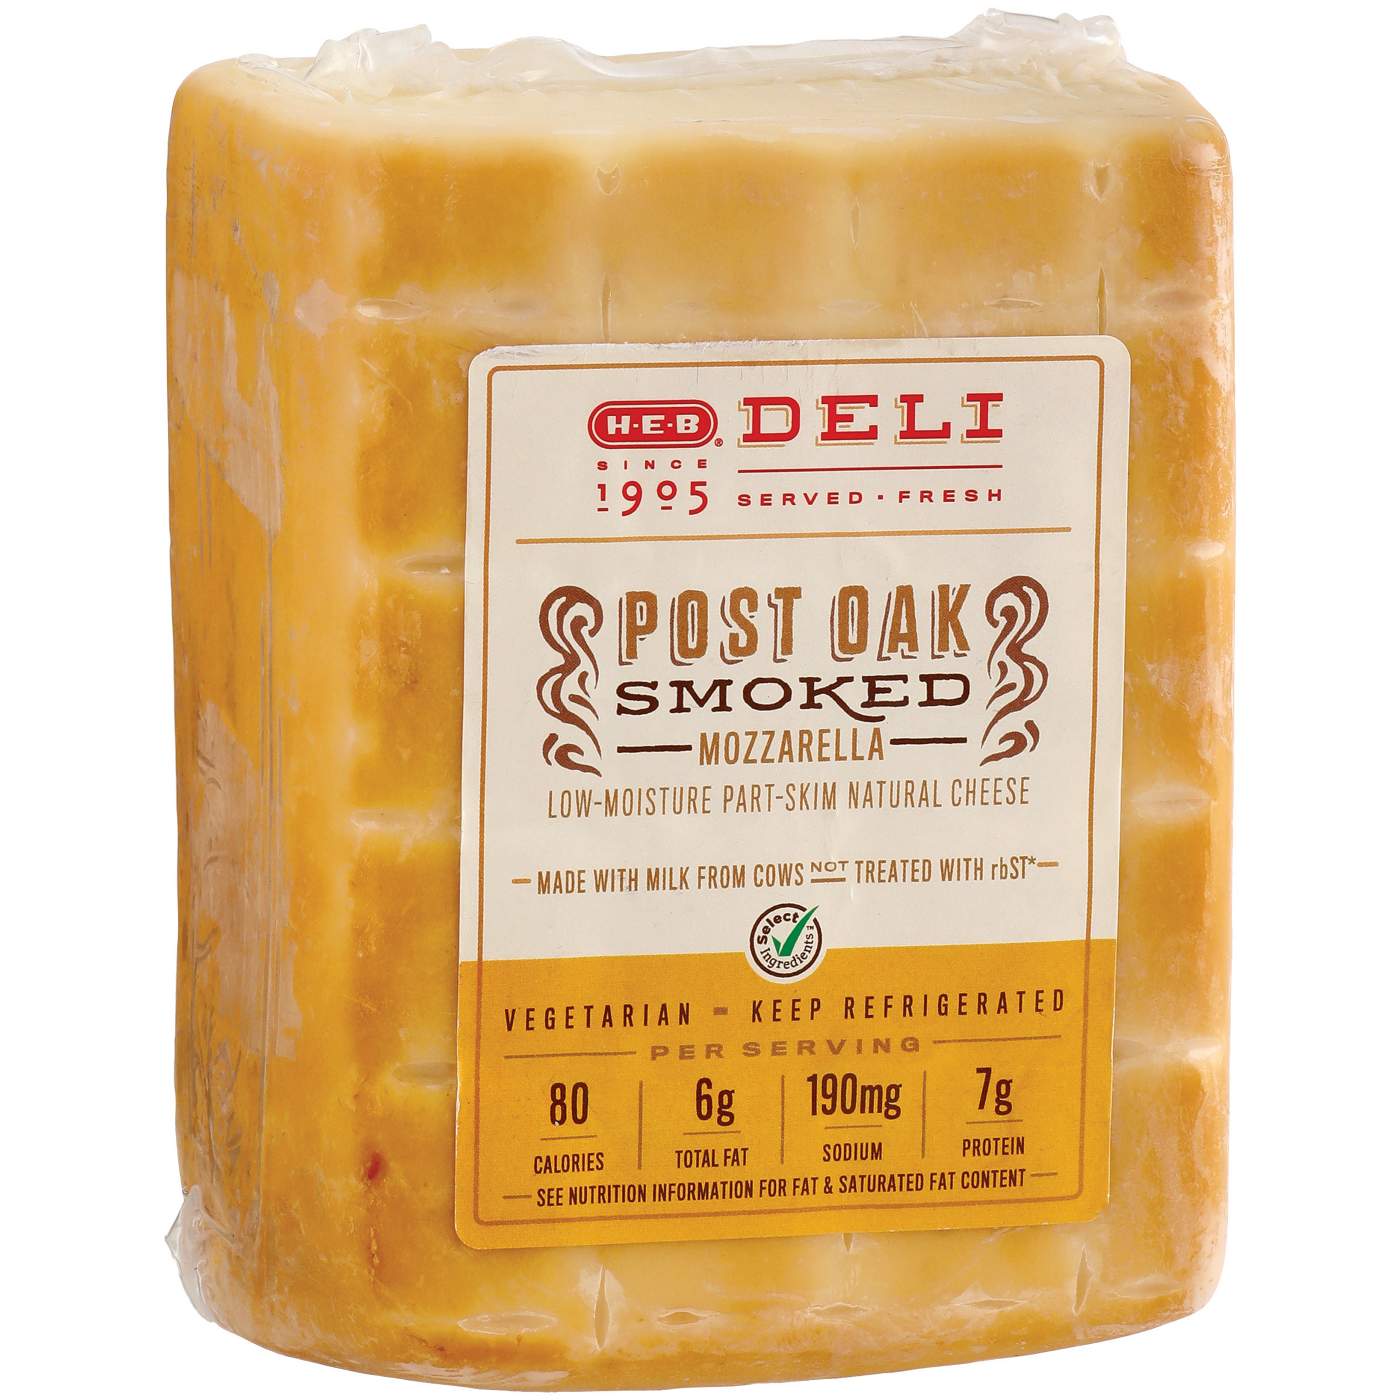 H-E-B Deli Sliced Post Oak Smoked Mozzarella Cheese; image 2 of 2